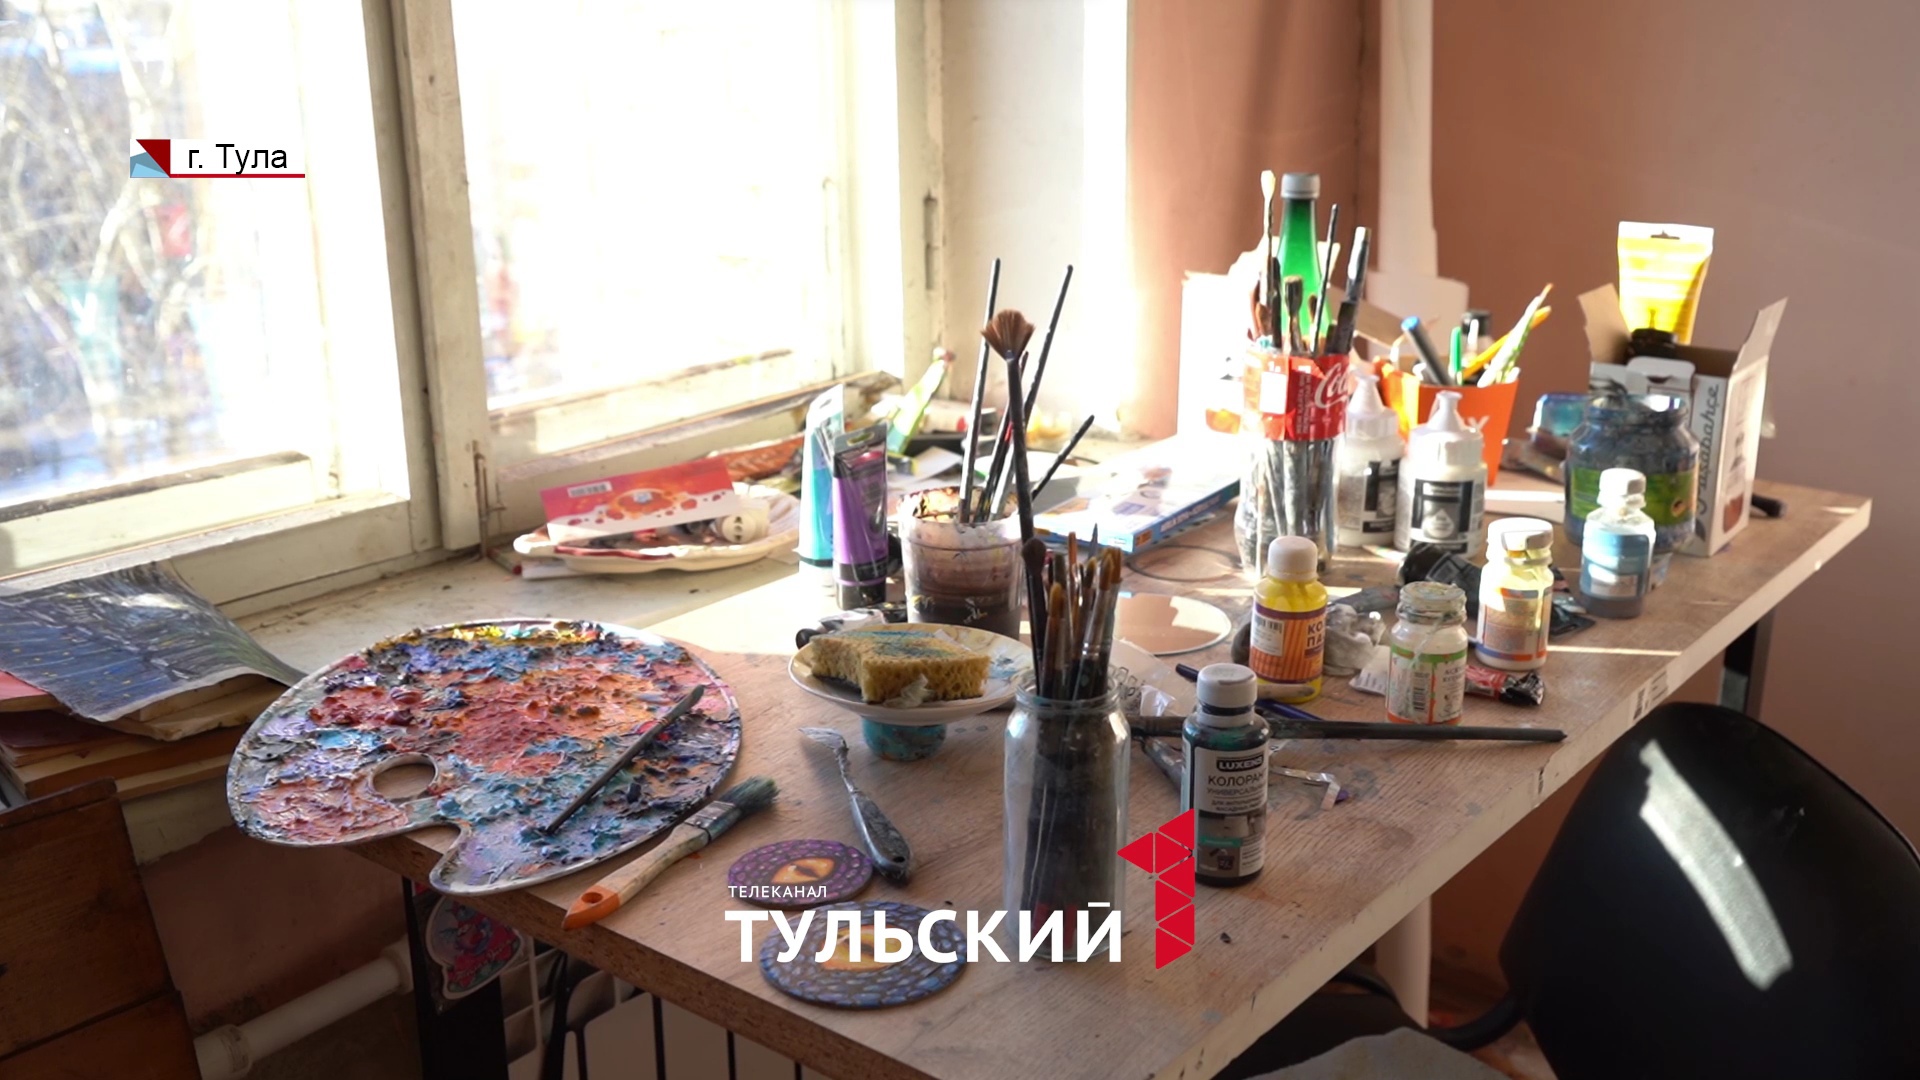 Тульский художник Павел Семенов дает вторую жизнь ненужному хламу